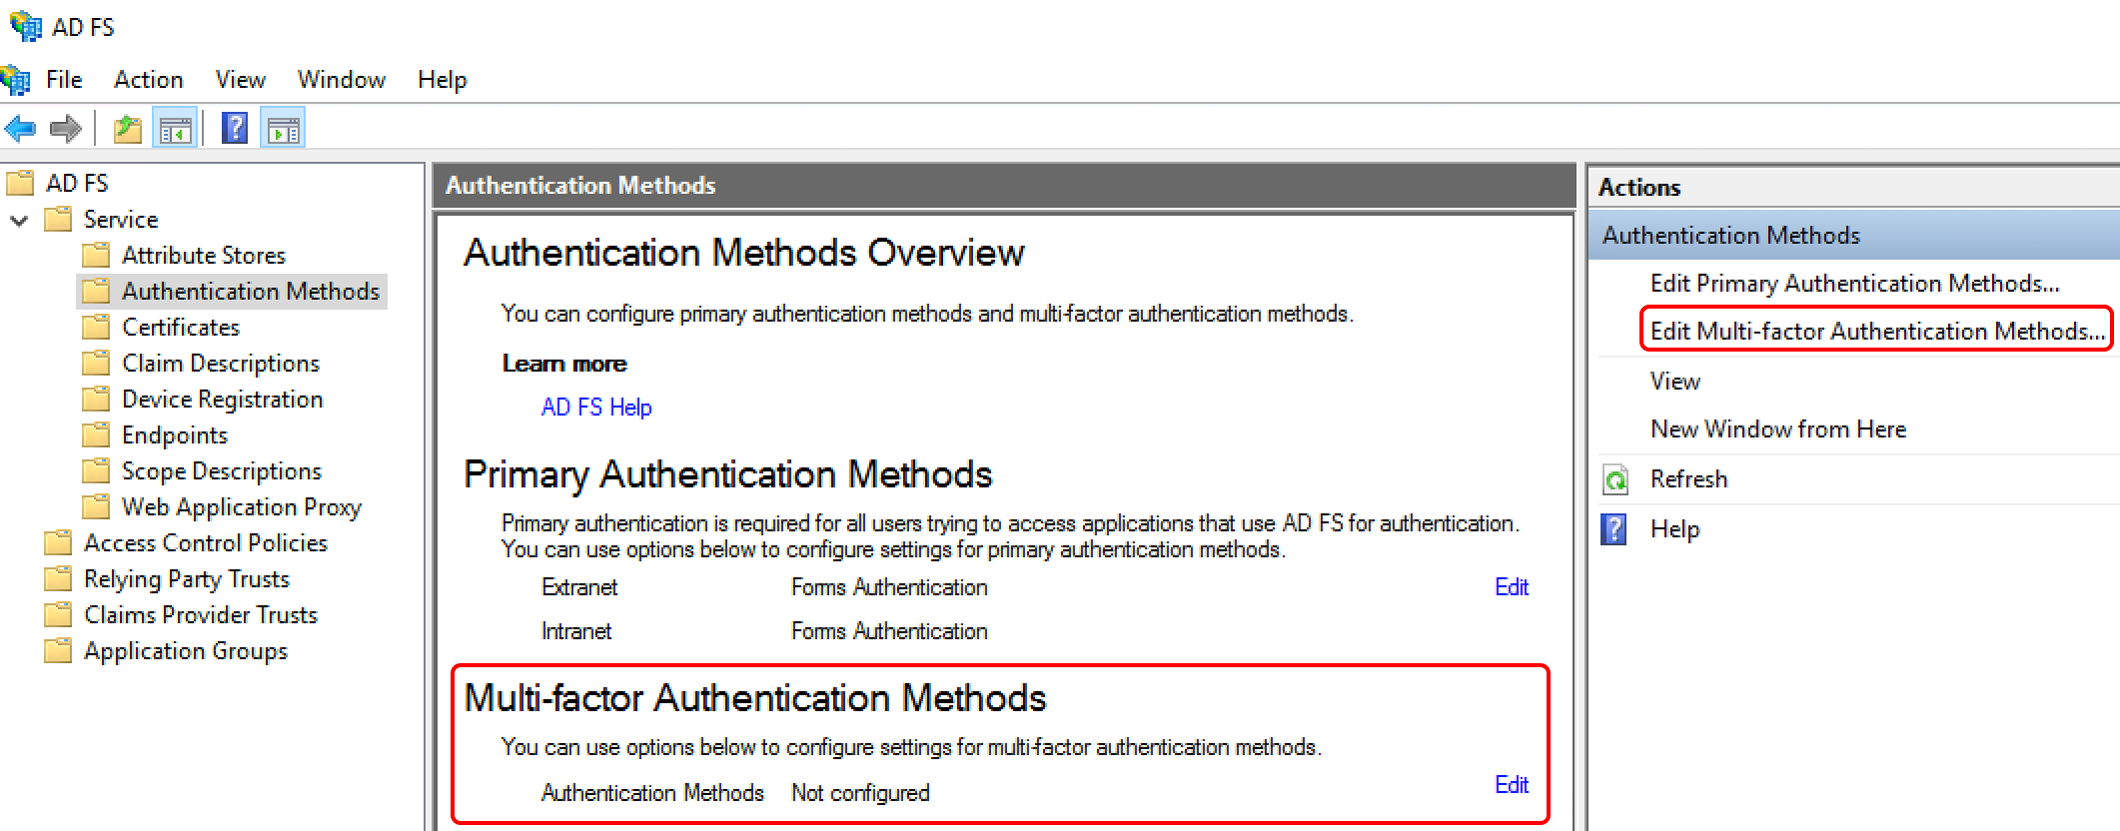 Edit Multi-factor Authentication Methods